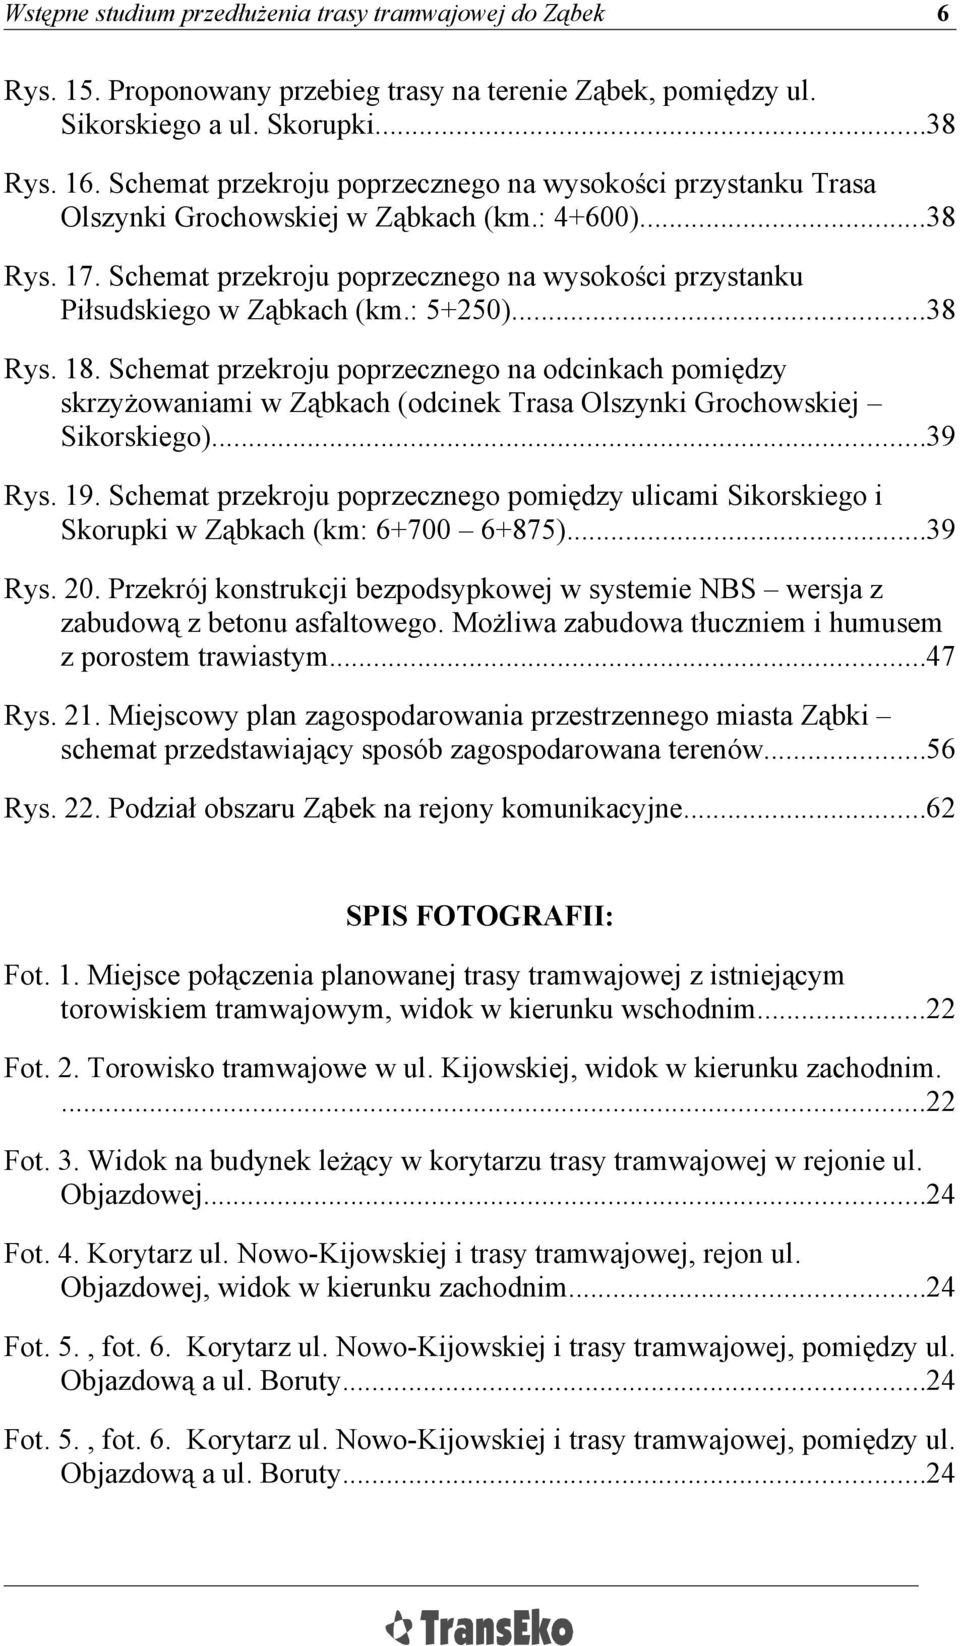 Schemat przekroju poprzecznego na wysokości przystanku Piłsudskiego w Ząbkach (km.: 5250)...38 Rys. 18.